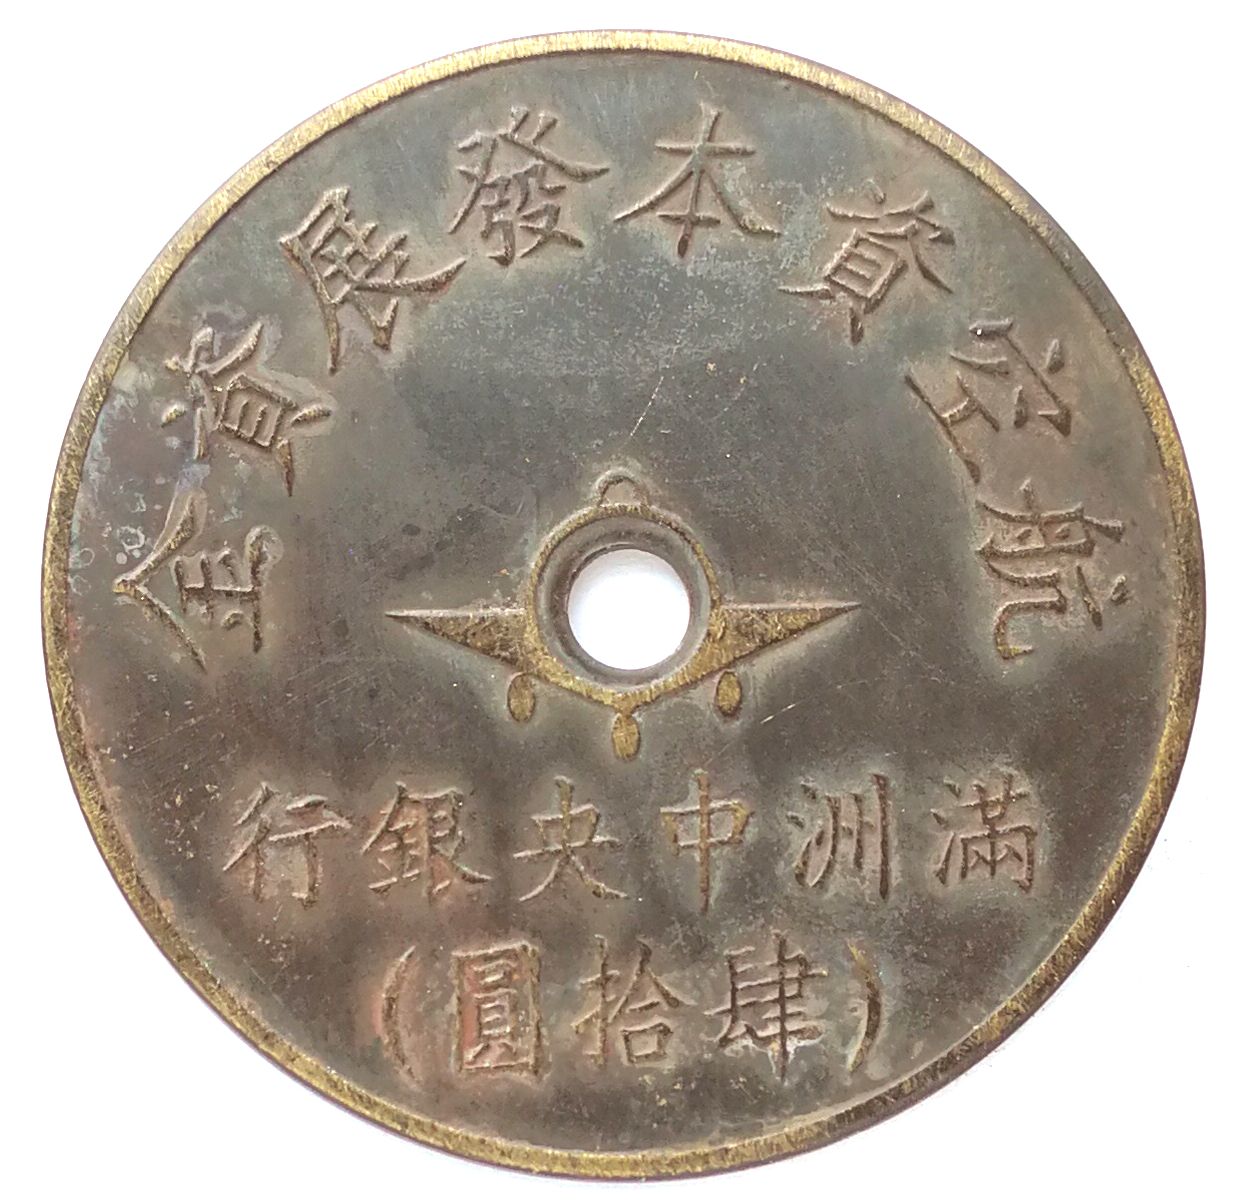 BT522, Manchukuo Aviation Development Fund, Central Bank 40 Yen Token, 1945